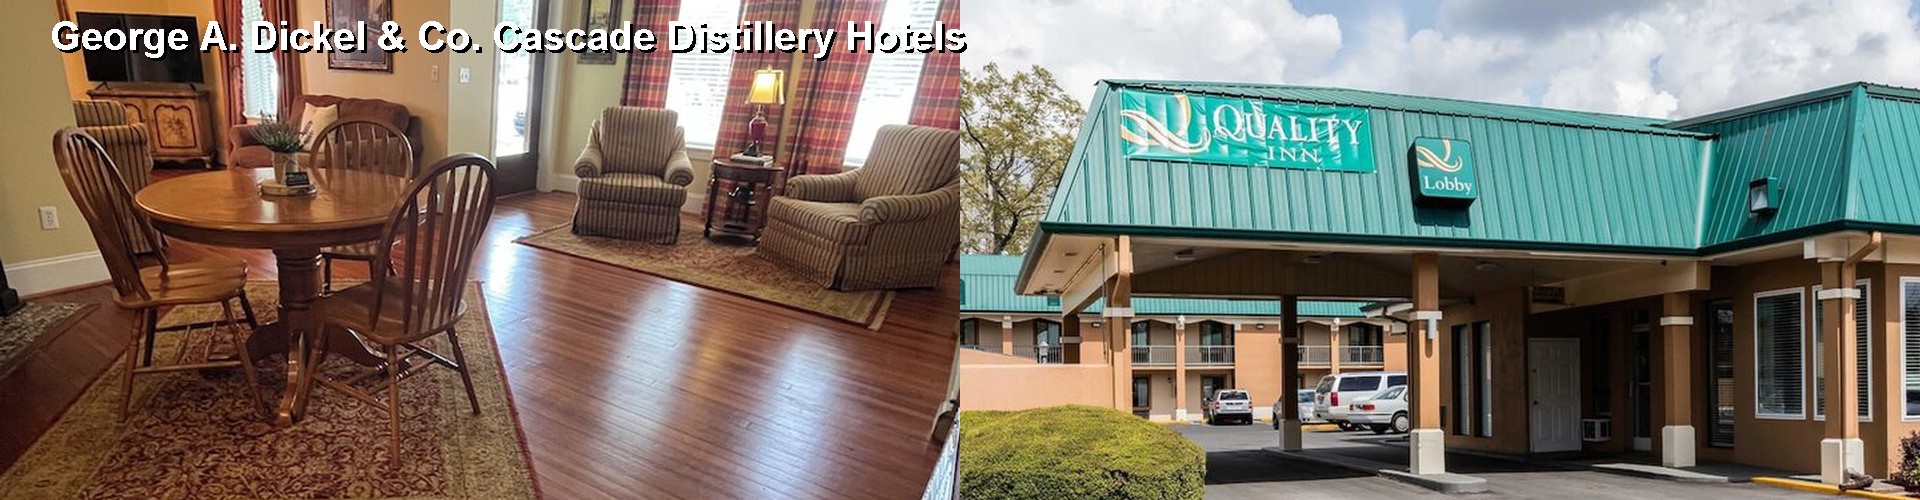 5 Best Hotels near George A. Dickel & Co. Cascade Distillery